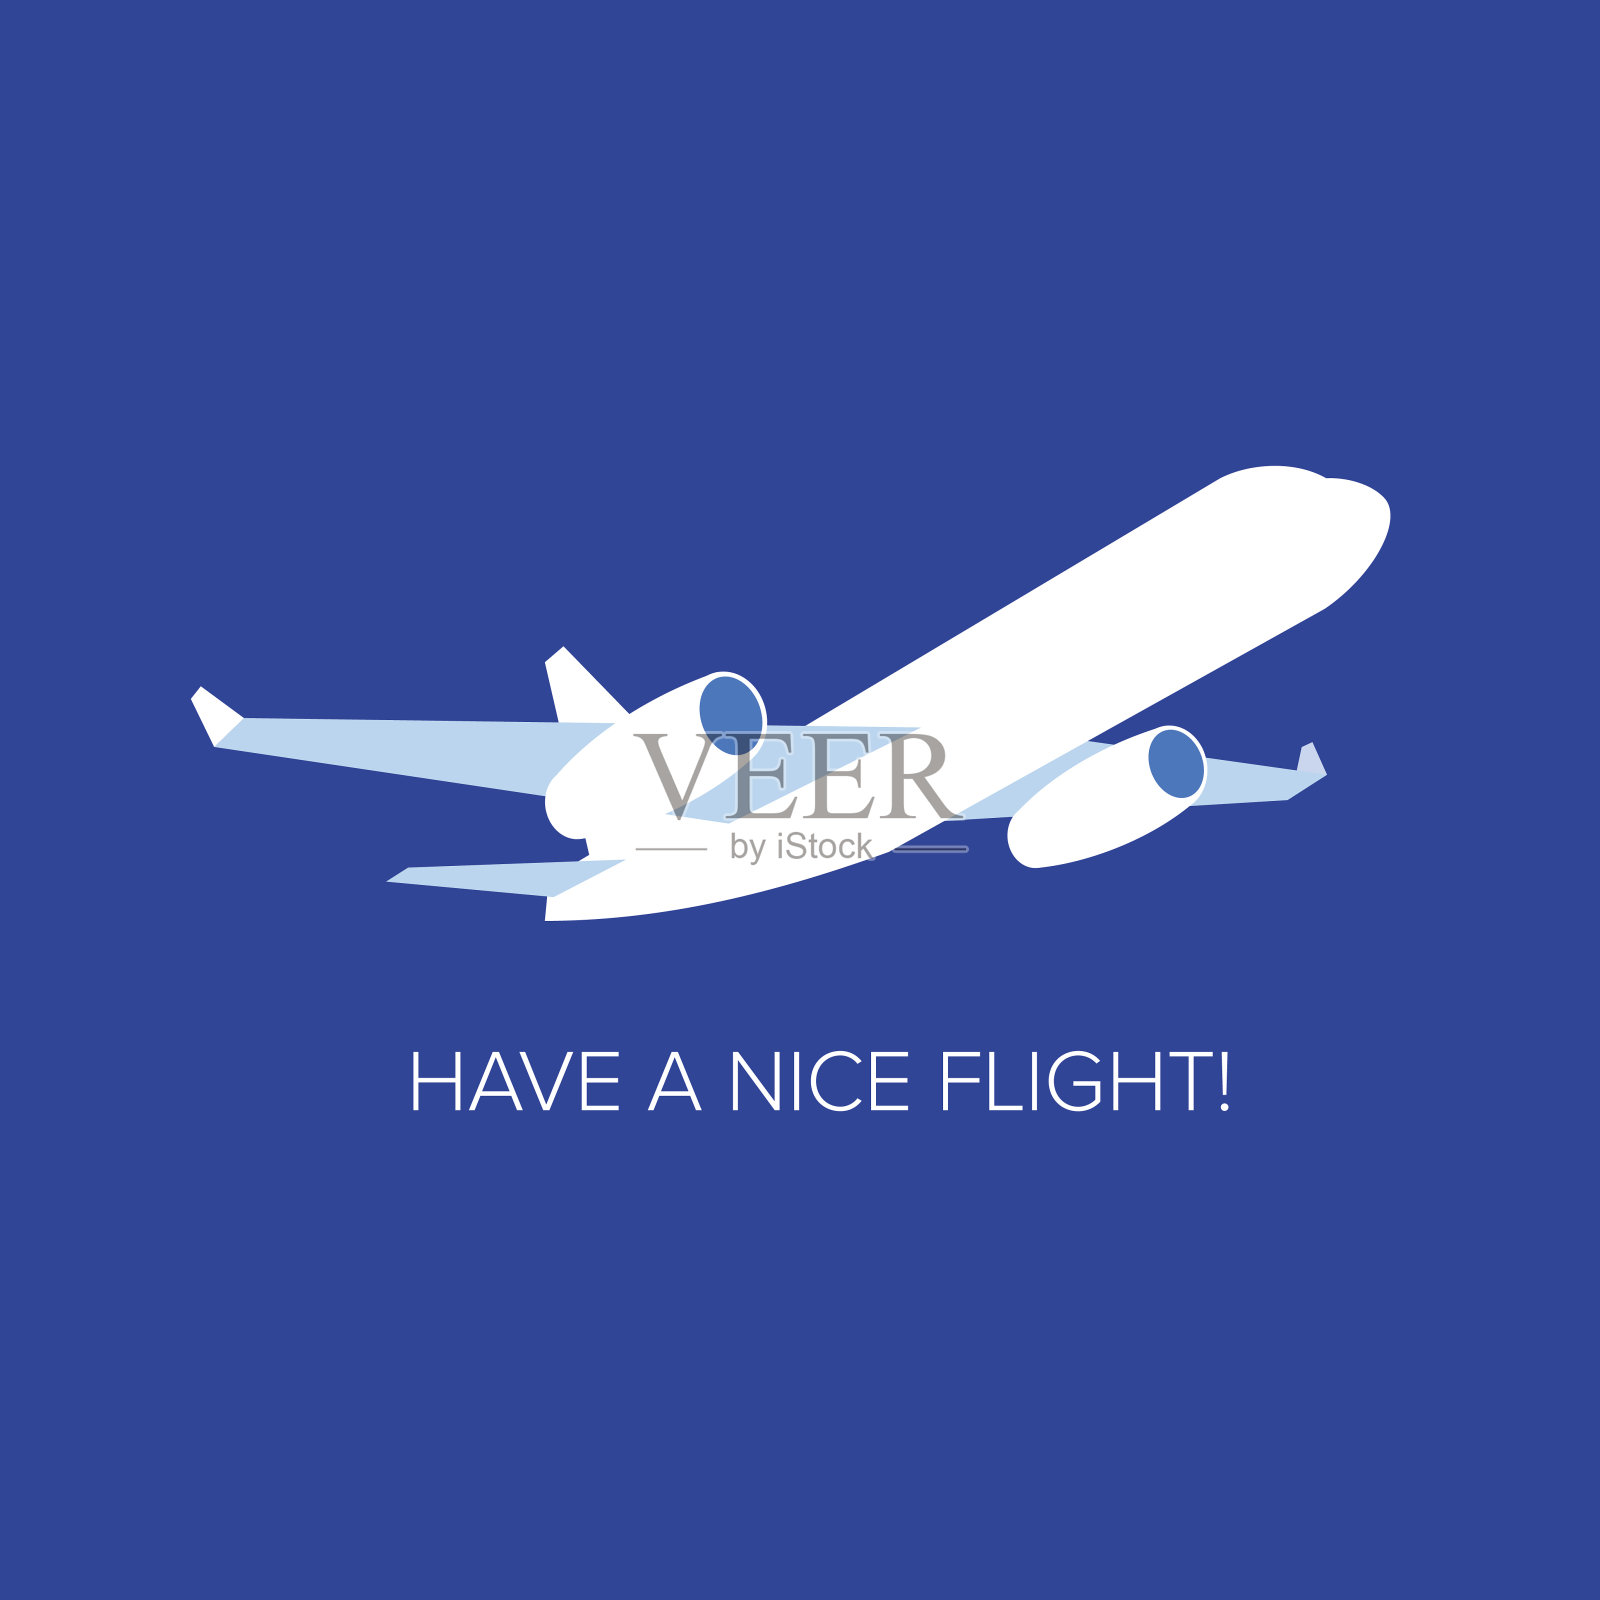 深蓝色背景下的白色喷气式飞机插画图片素材